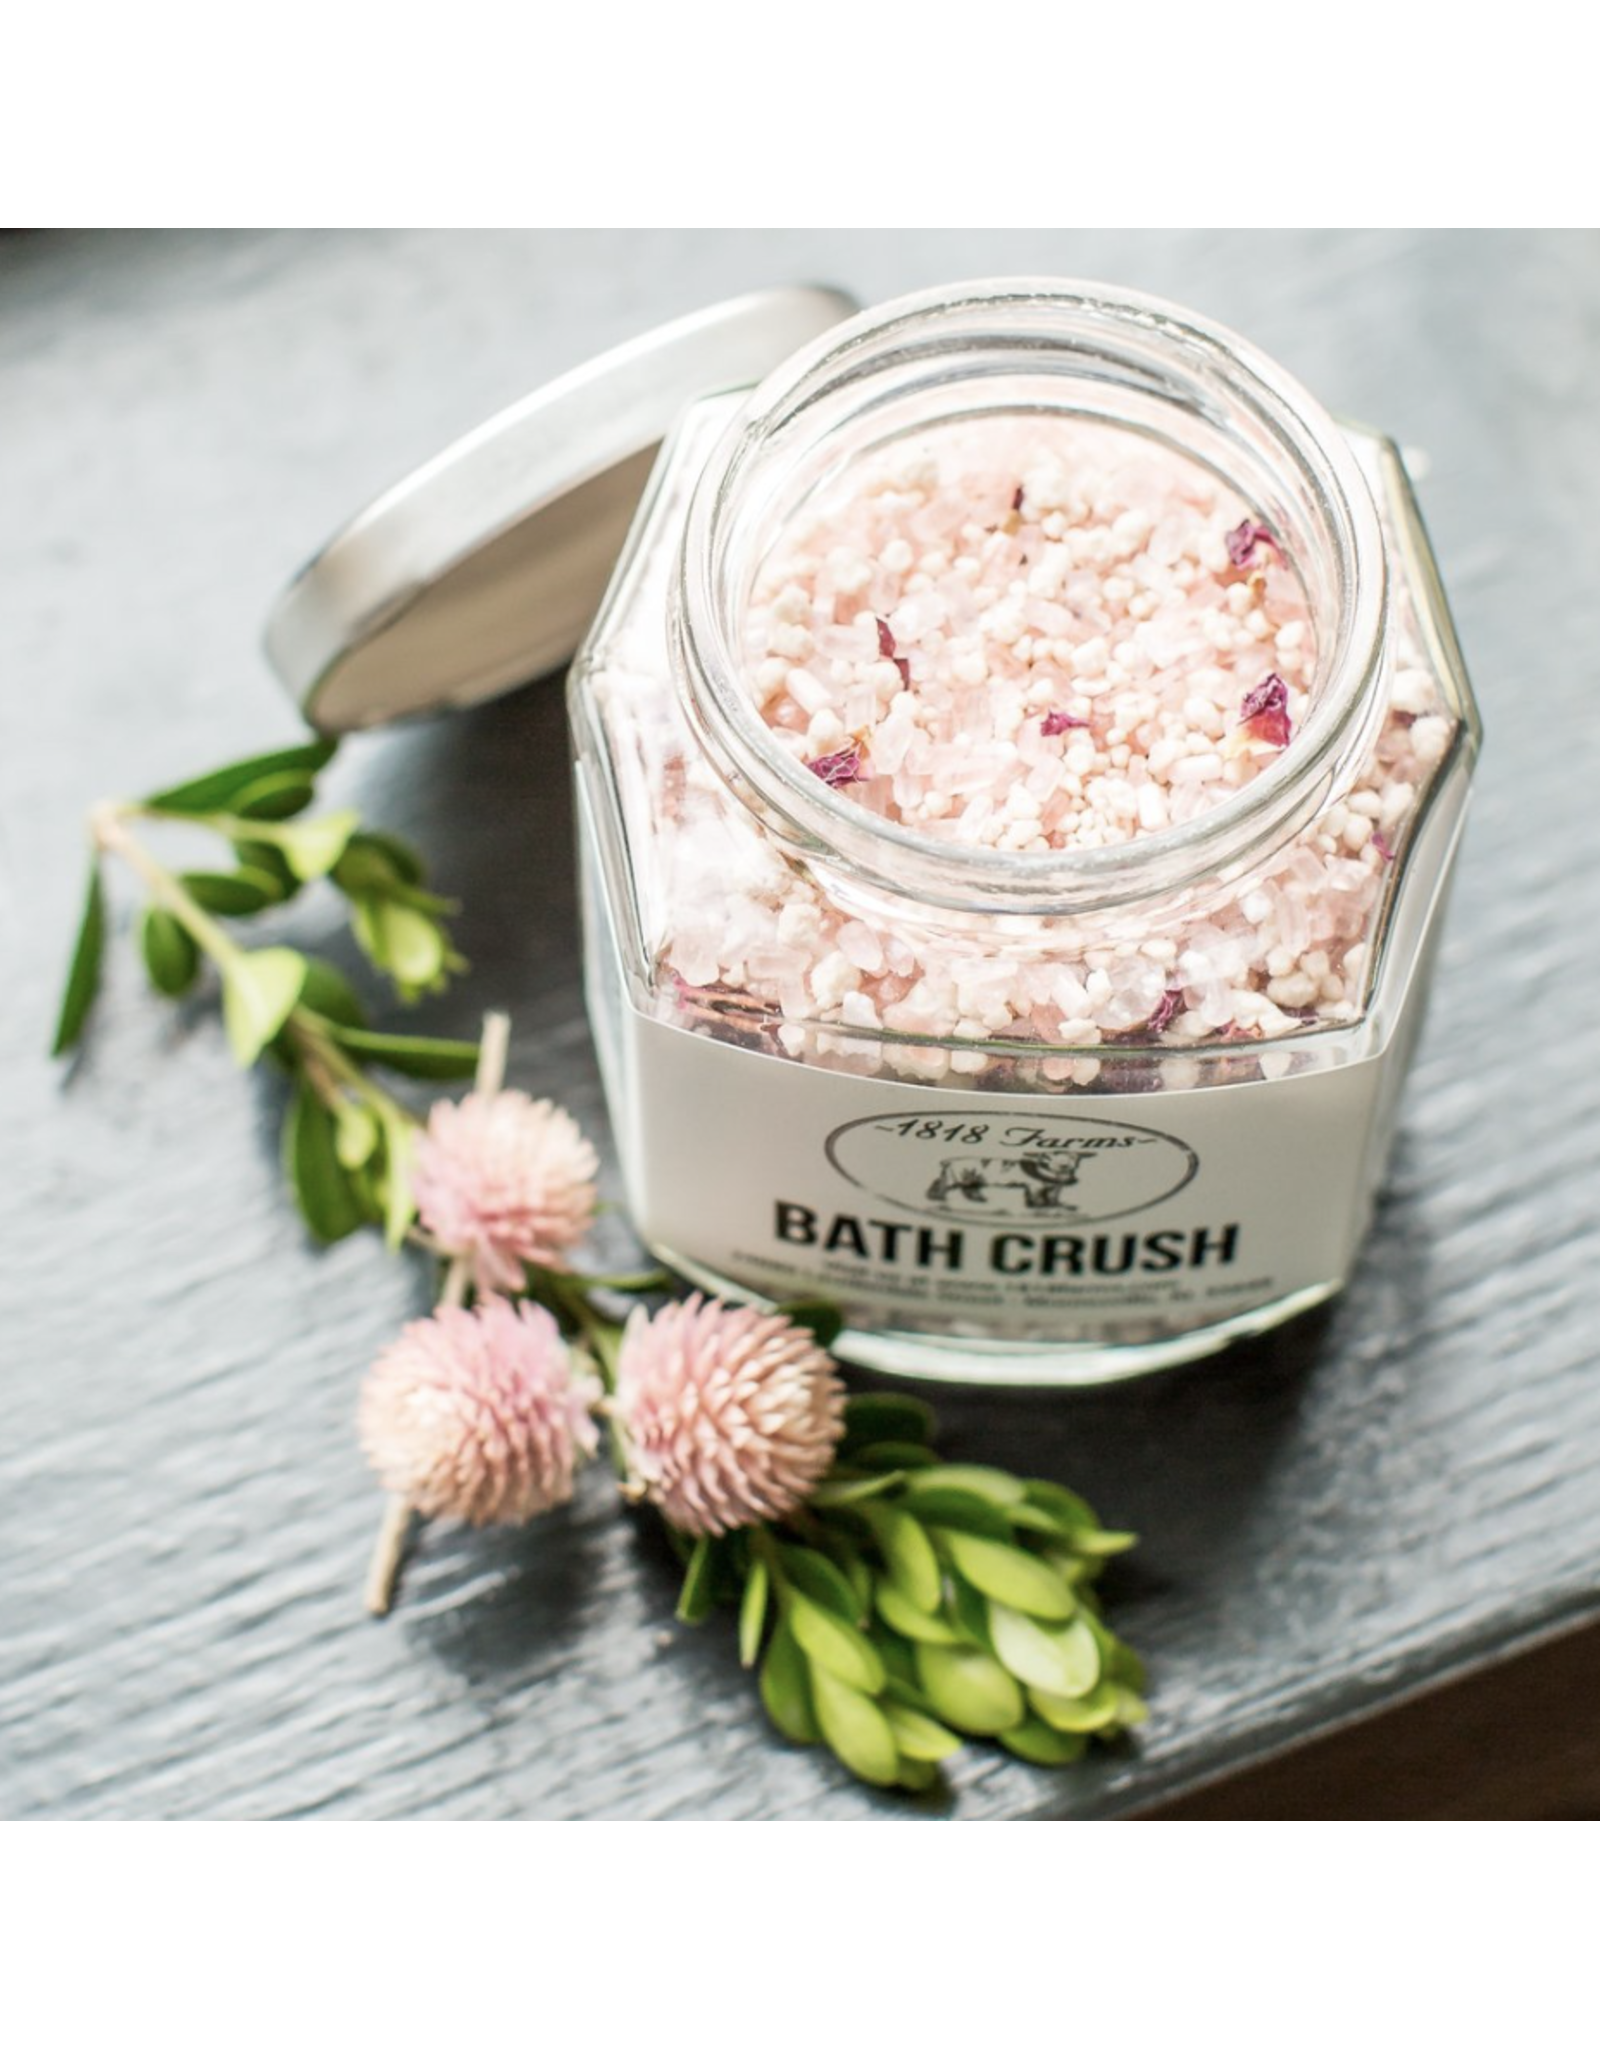 1818 Farms Bath Crush Butter Cream